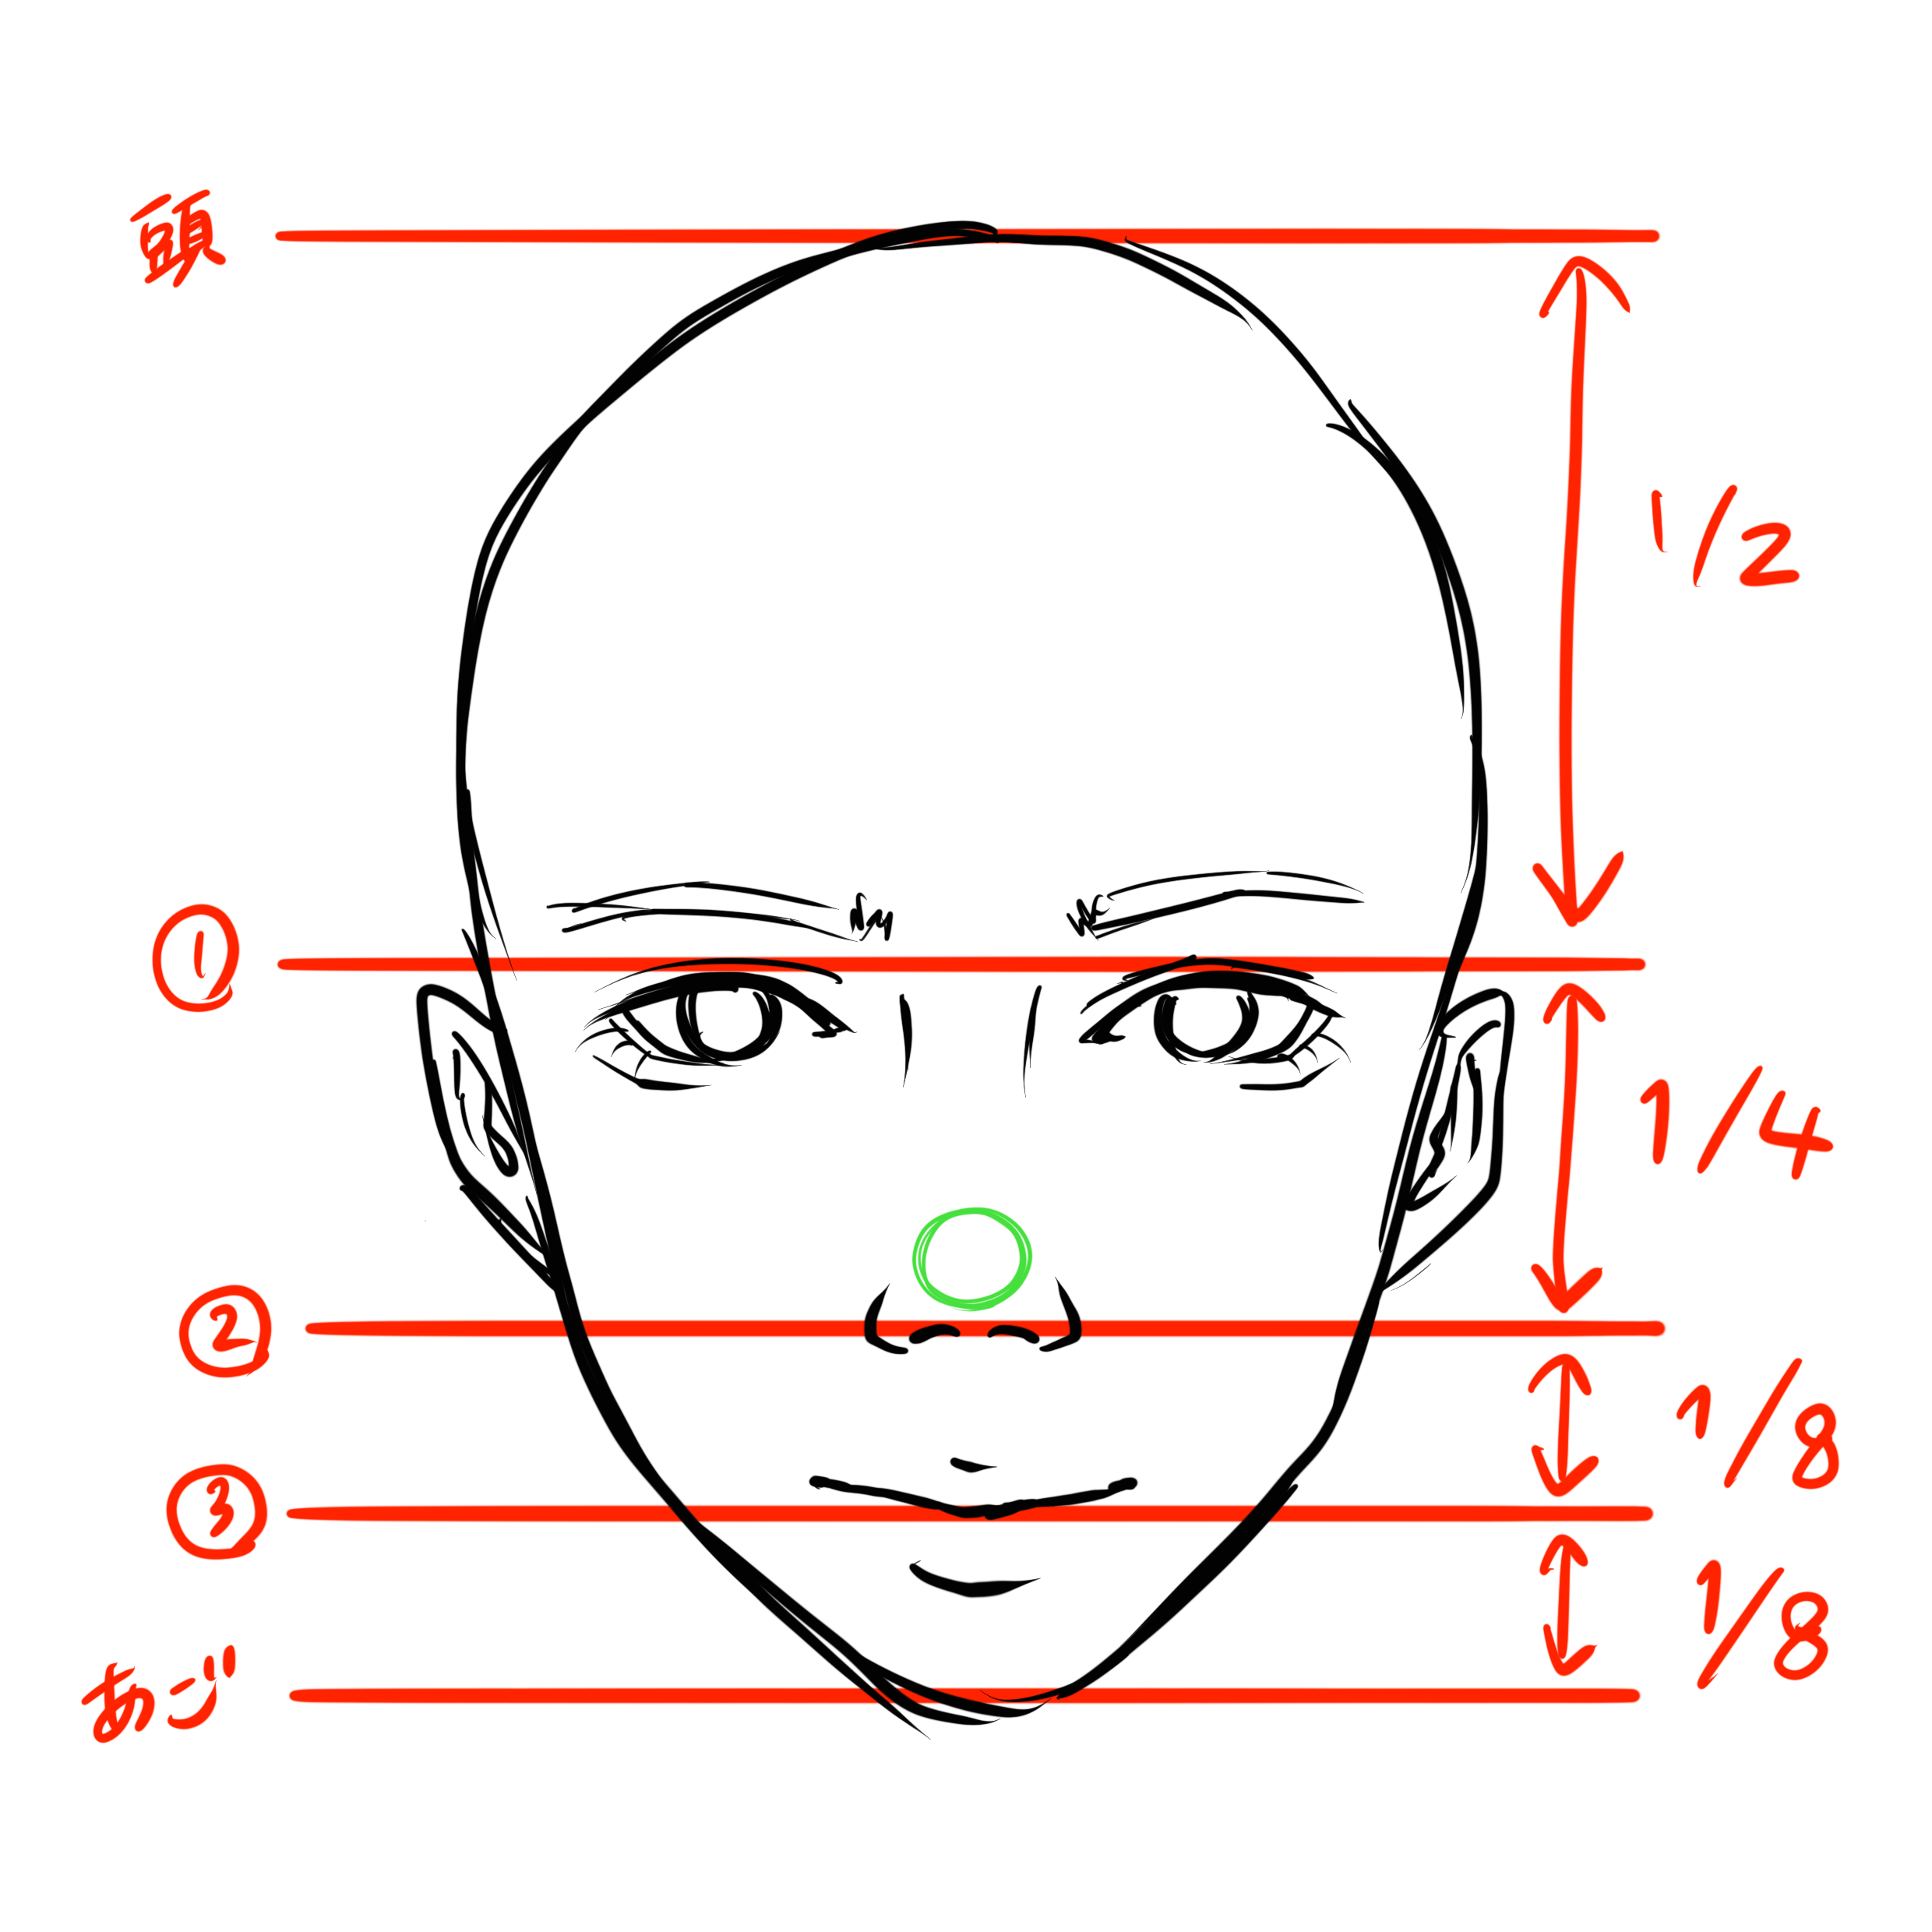 鼻の描き方 顔全体のバランスを担う鼻の描き方を徹底解説 株式会社esolab